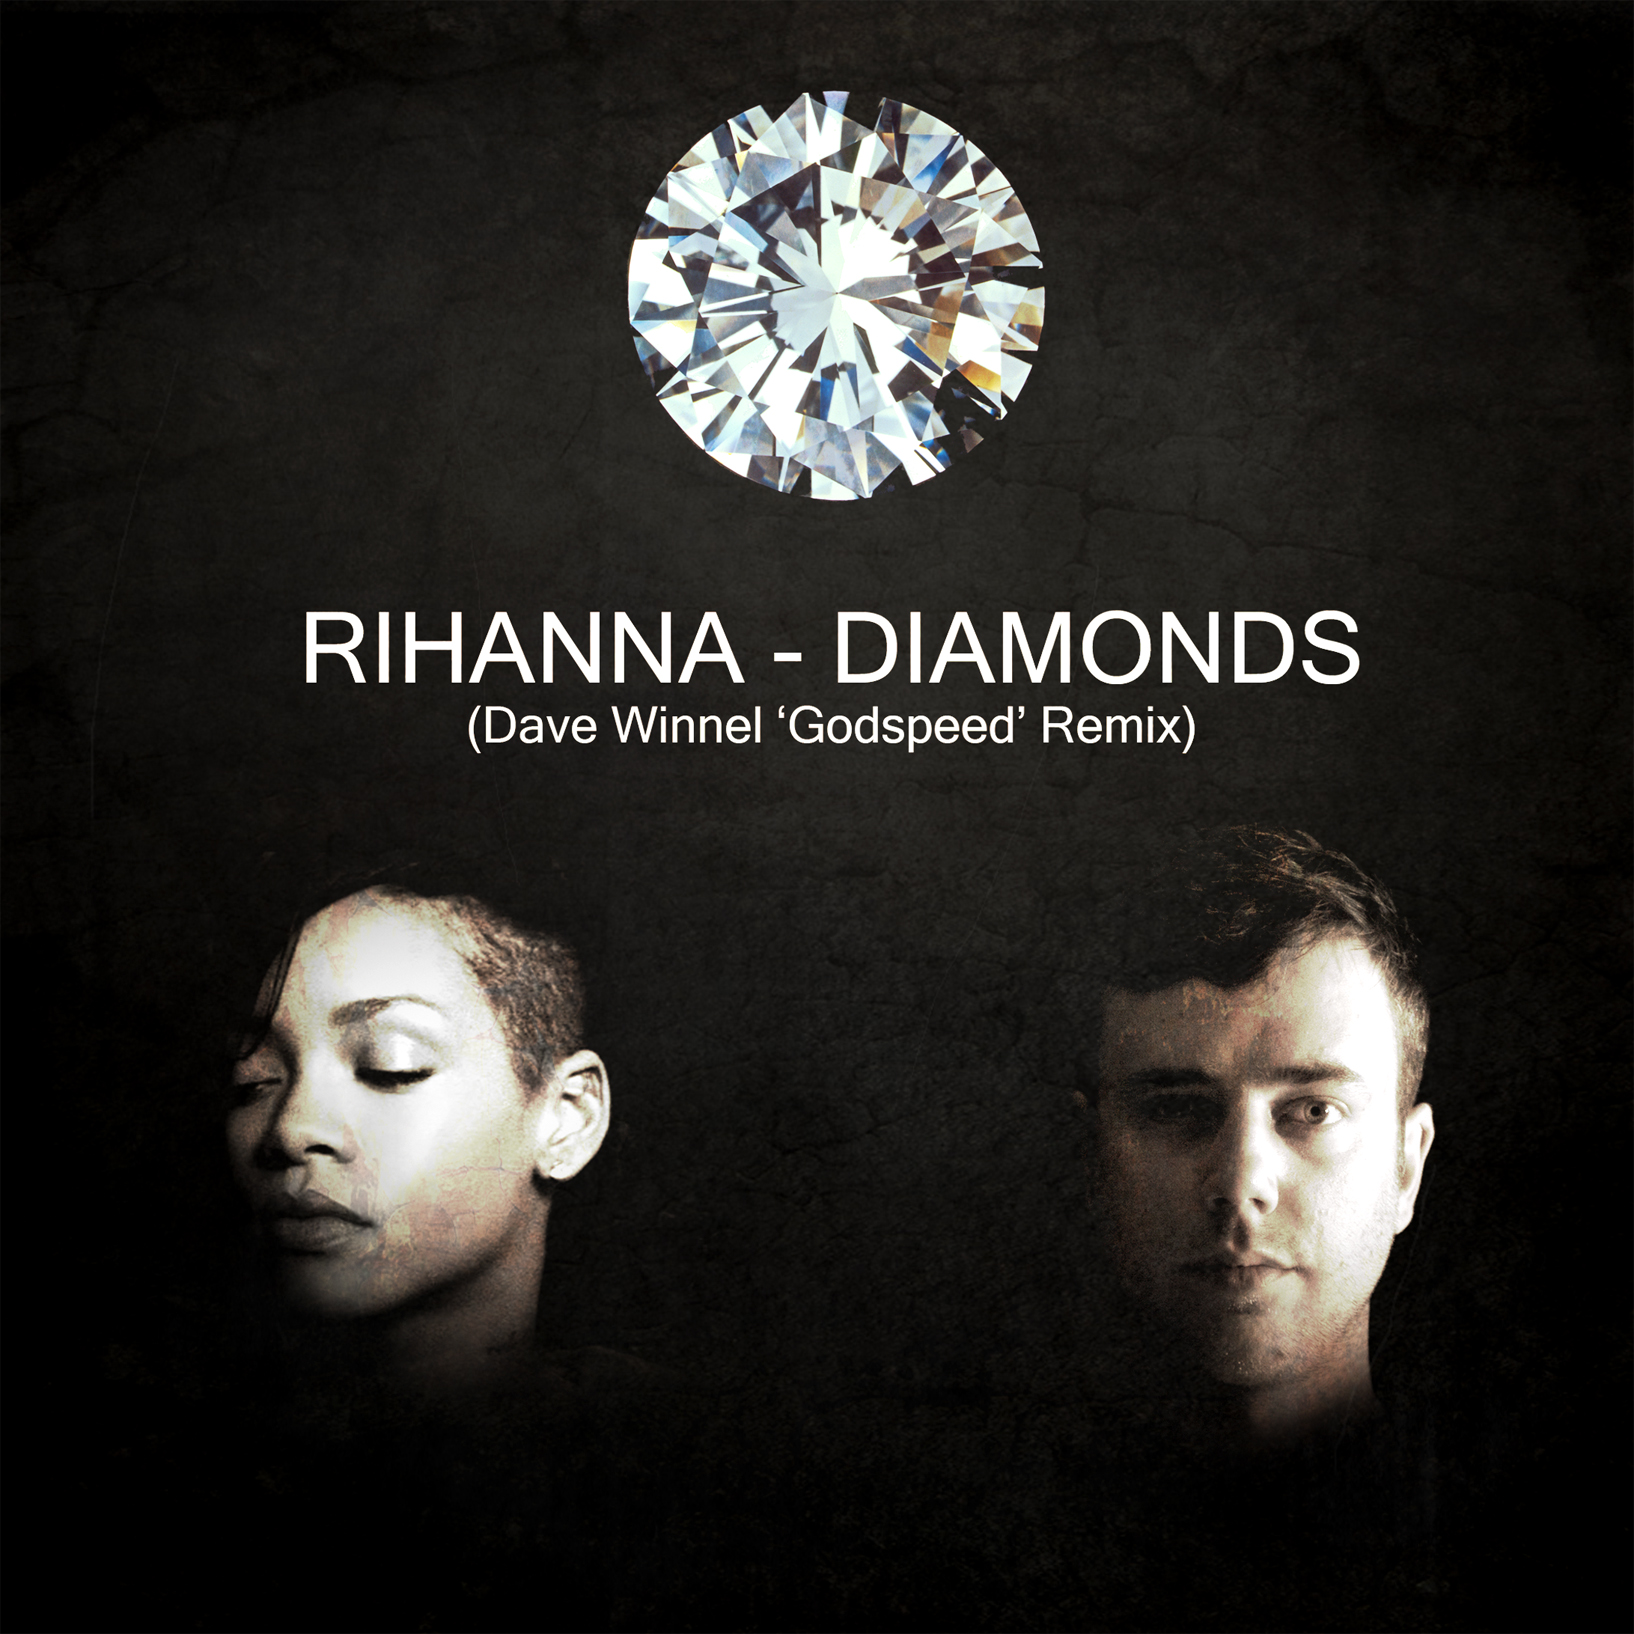 متن+ترجمه موزیک Diamond از Rihanna